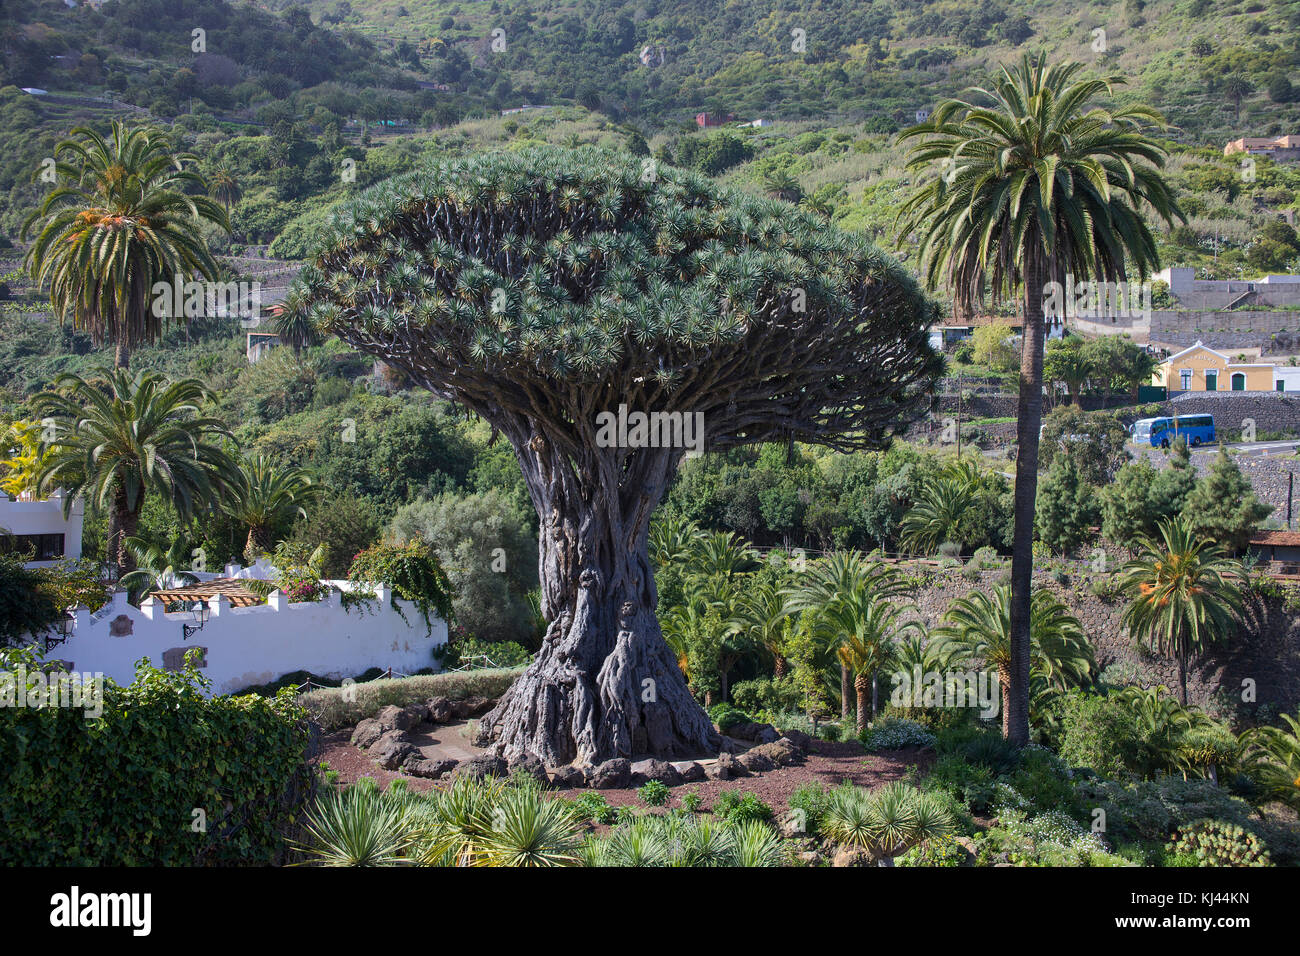 Drago milenario, der bekannteste Drachenbaum (Dracaena Draco) auf den Kanarischen Inseln, 400 Jahre alt, im Dorf Icod de los Vinos, Teneriffa Inseln Stockfoto